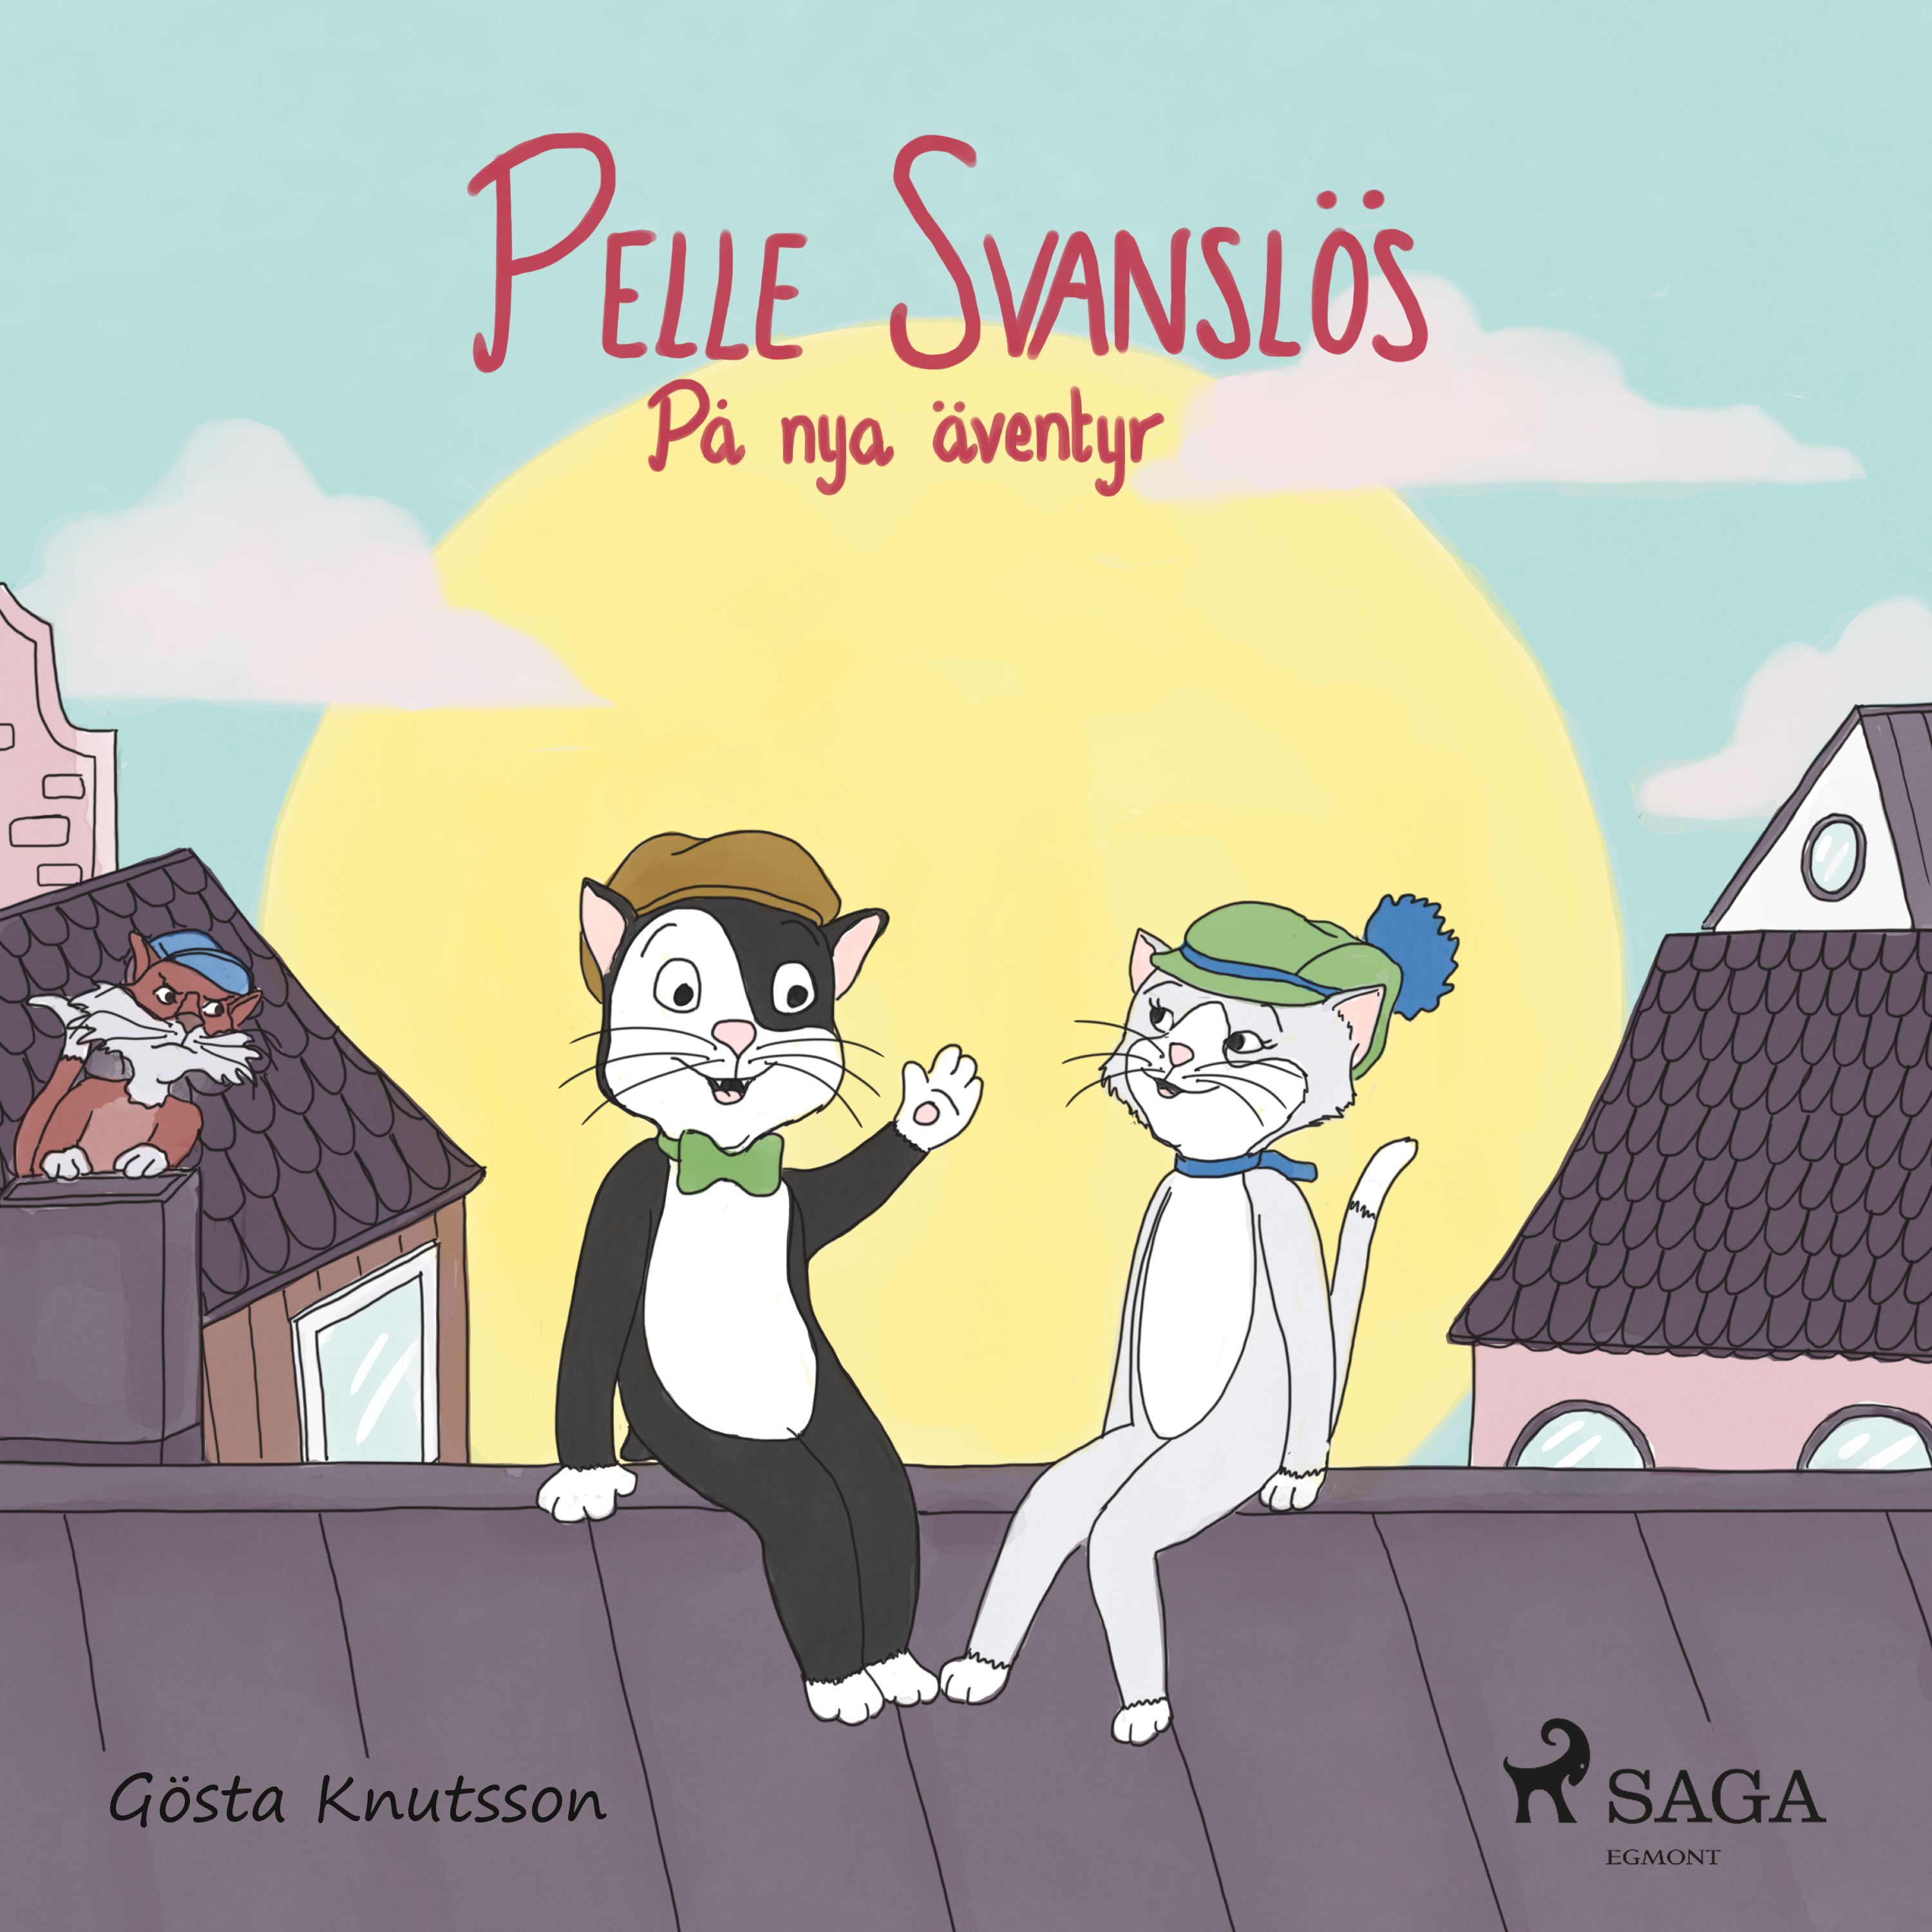 Pelle Svanslös på nya äventyr, audiobook by Gösta Knutsson